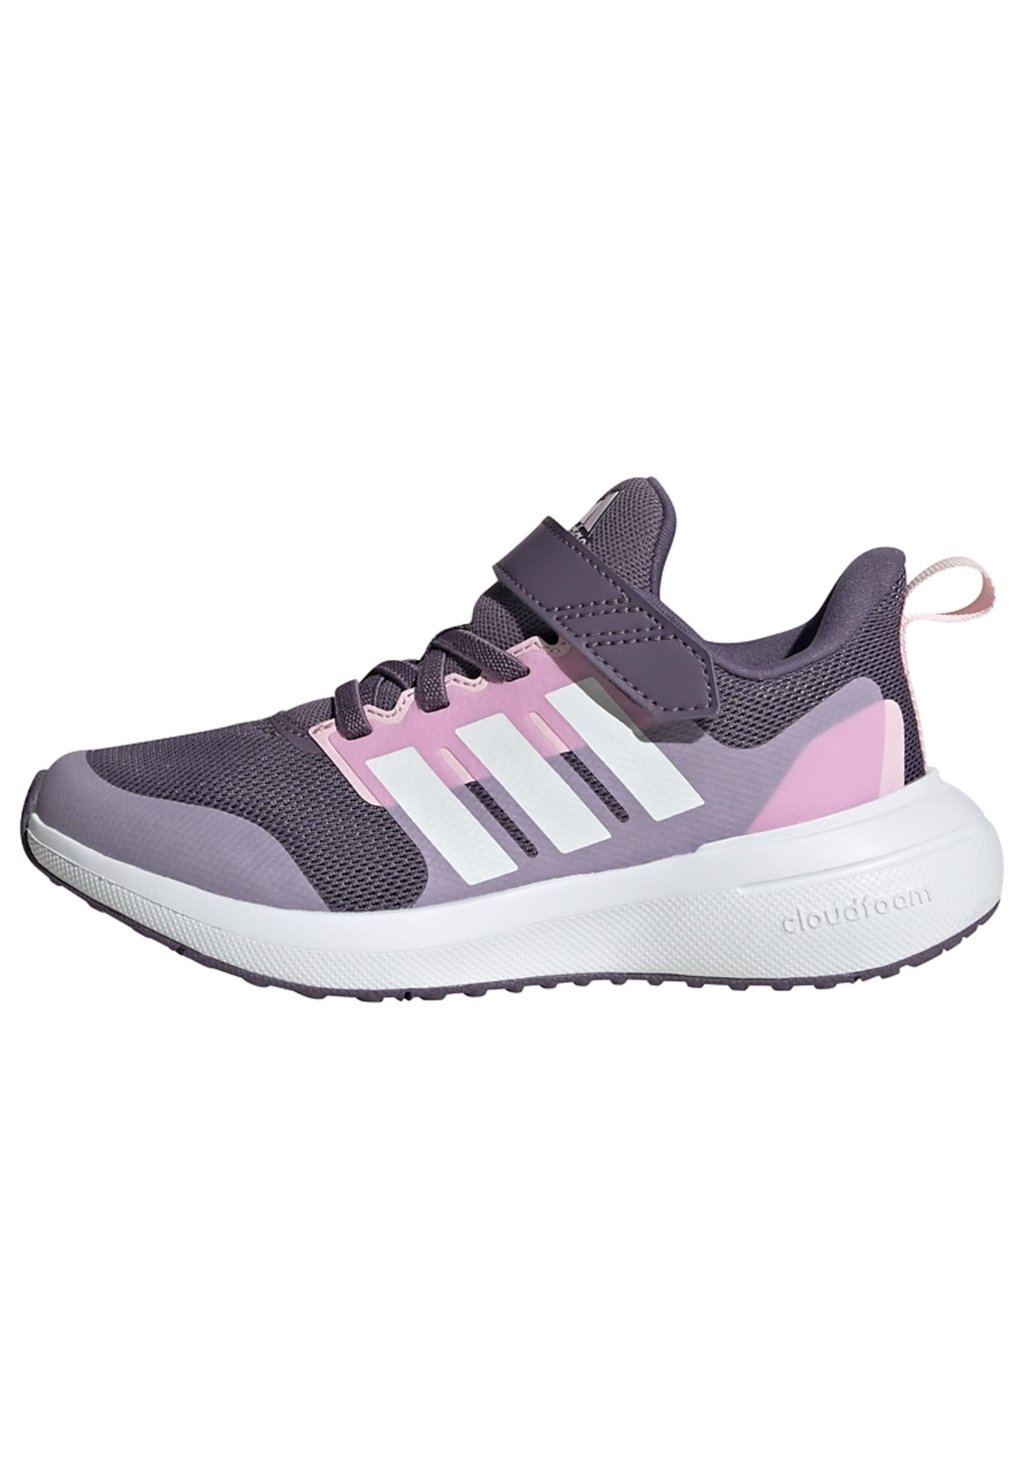 Нейтральные кроссовки Fortarun 2.0 Adidas, цвет shadow violet cloud white bliss lilac